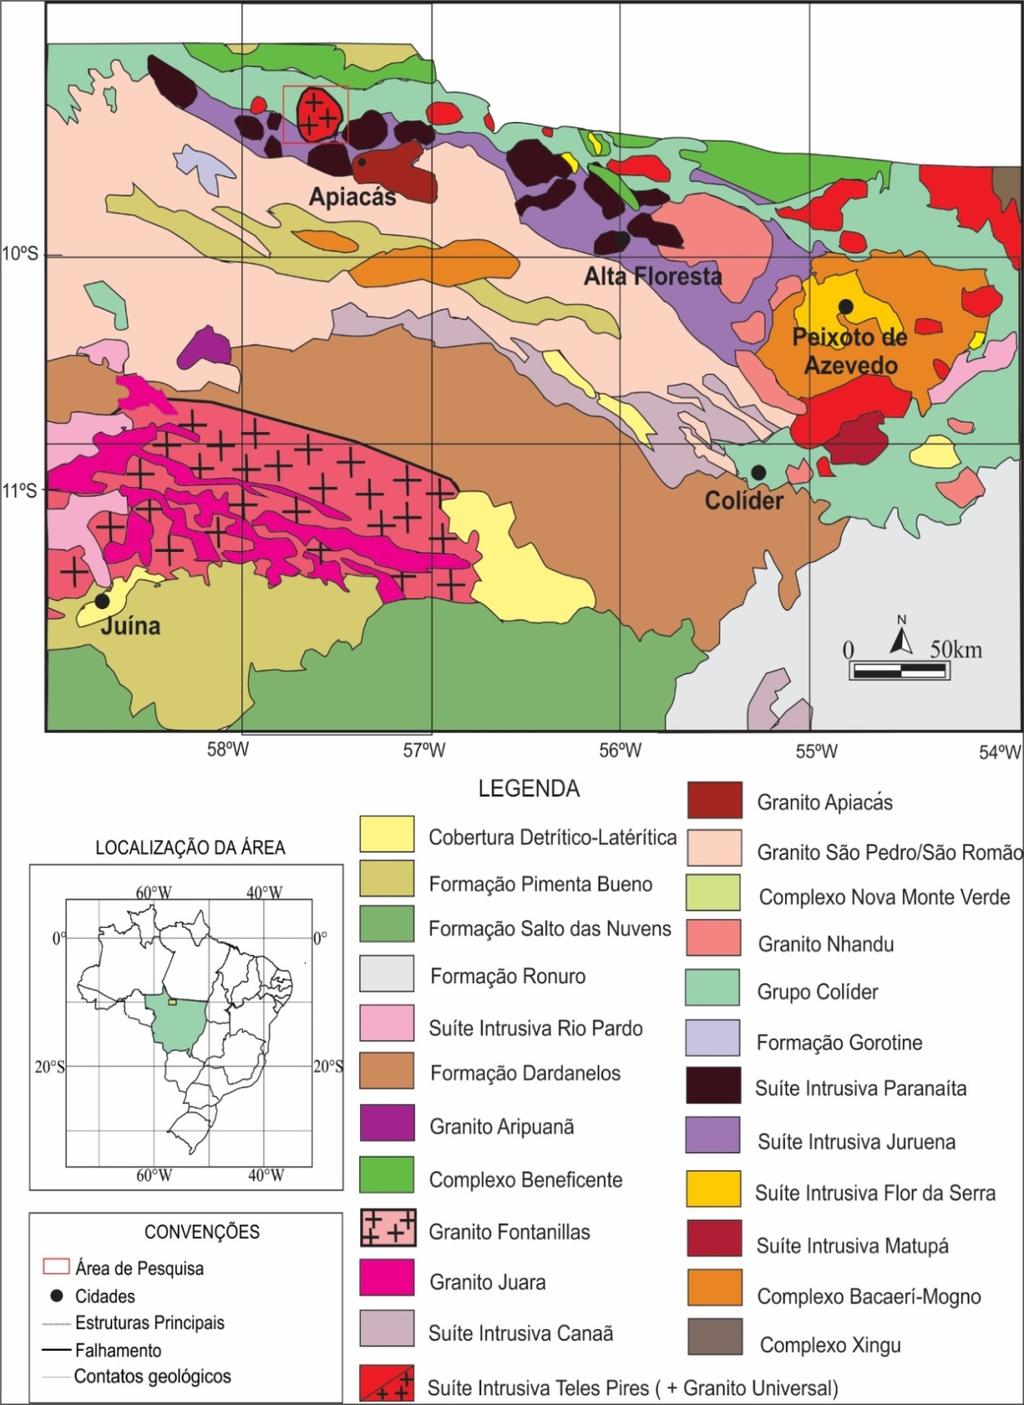 Figura 2 - Mapa Geológico do norte do estado de Mato Grosso e localização da área estudada (mod. Lacerda Filho et al., 2004).